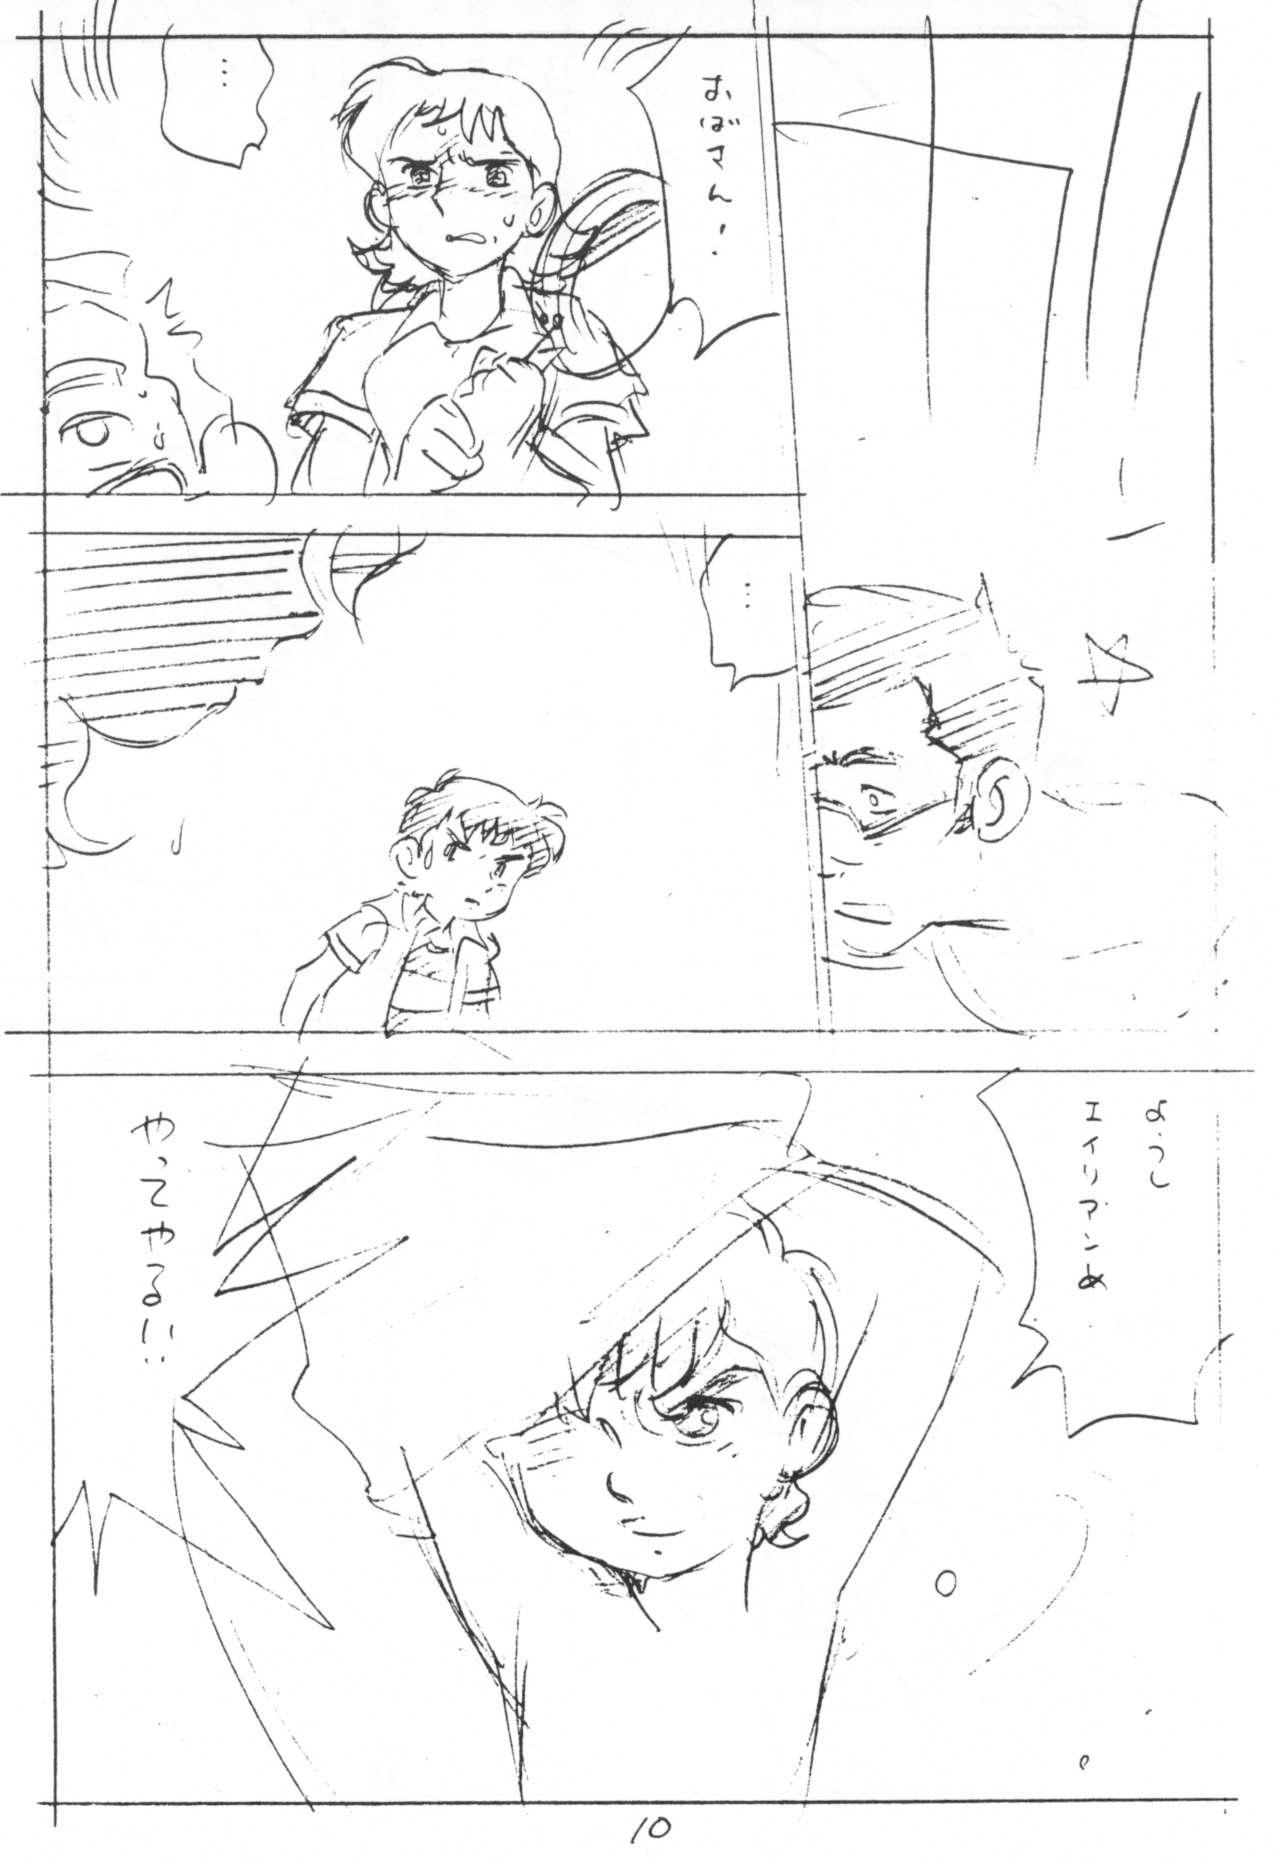 Dicks Enpitsu Kaki Eromanguwa 1999-nen Natsu no Gou - Tetsujin 28 gou Fellatio - Page 10